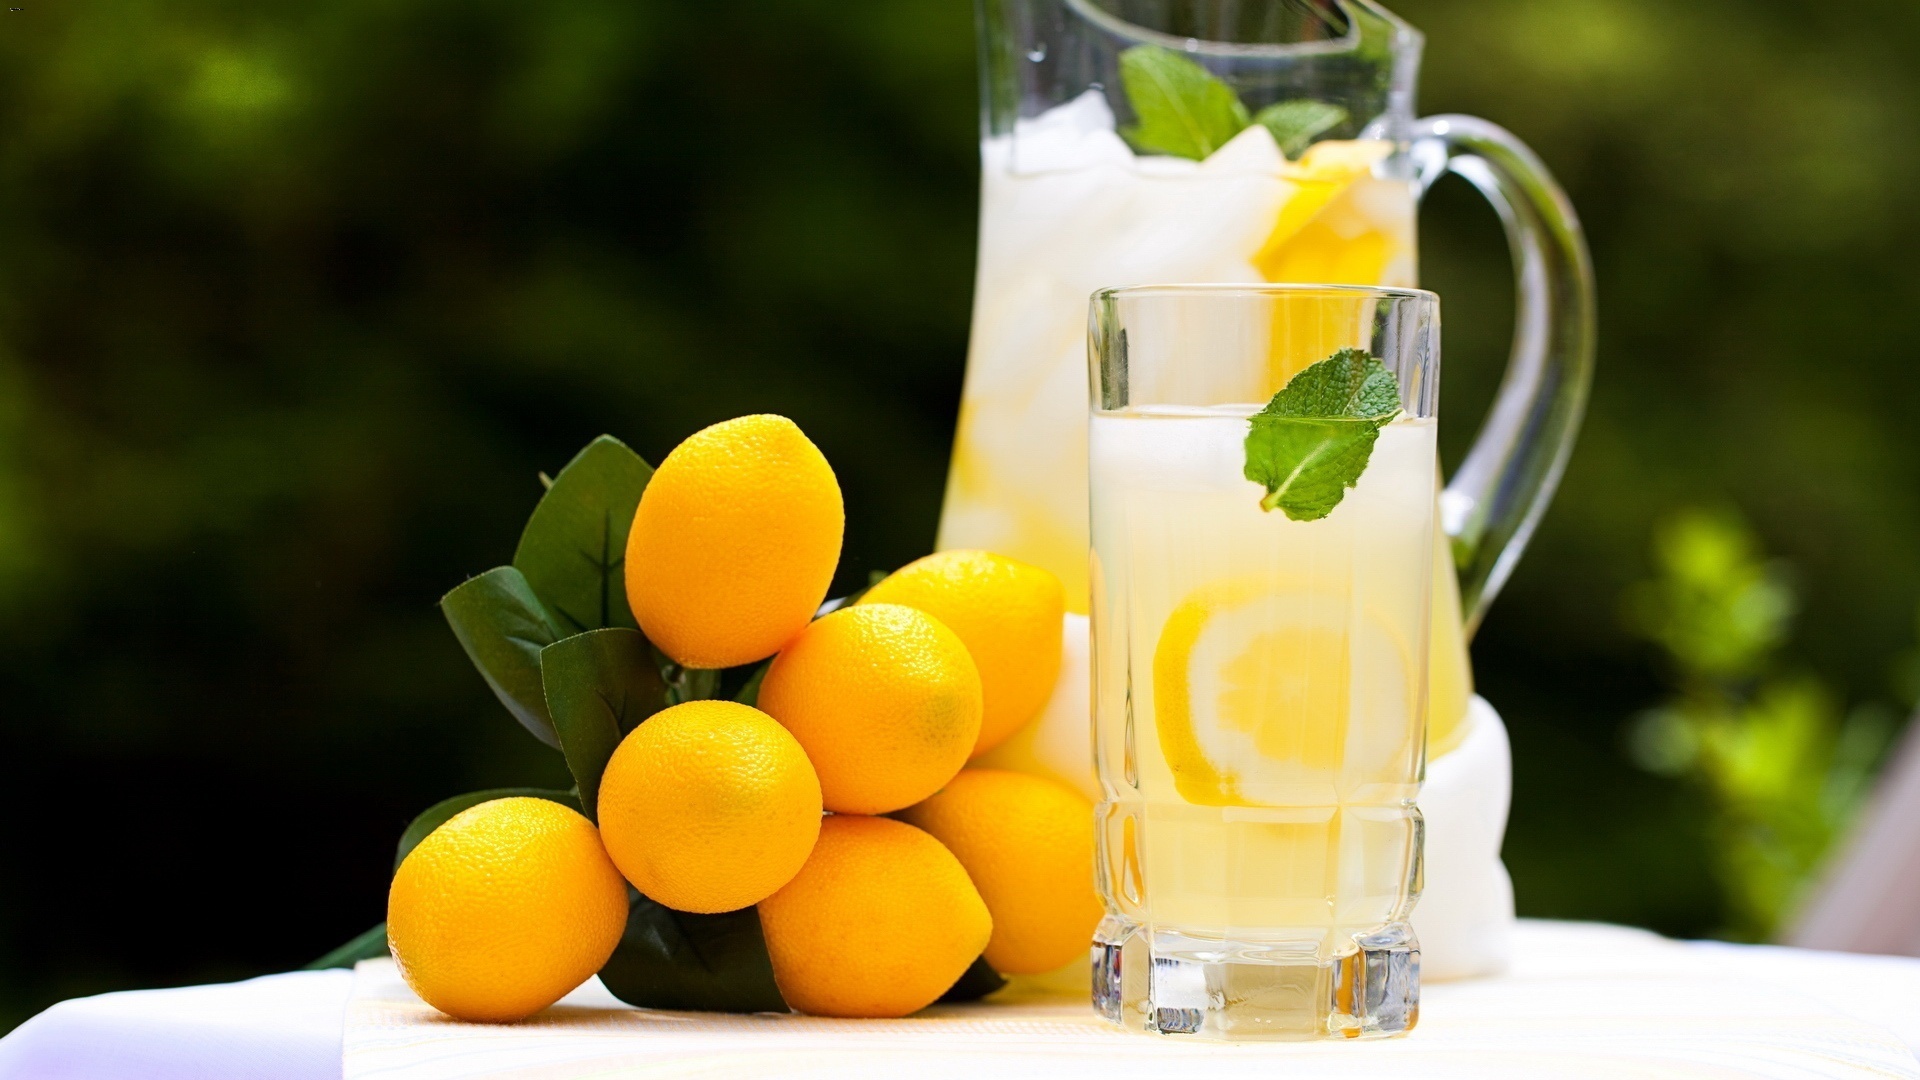 西瓜柠檬水 库存照片. 图片 包括有 柠檬, 红色, 自创, 柠檬水, 加薄荷和冰的酒, 玻璃, 多维数据集 - 98065458